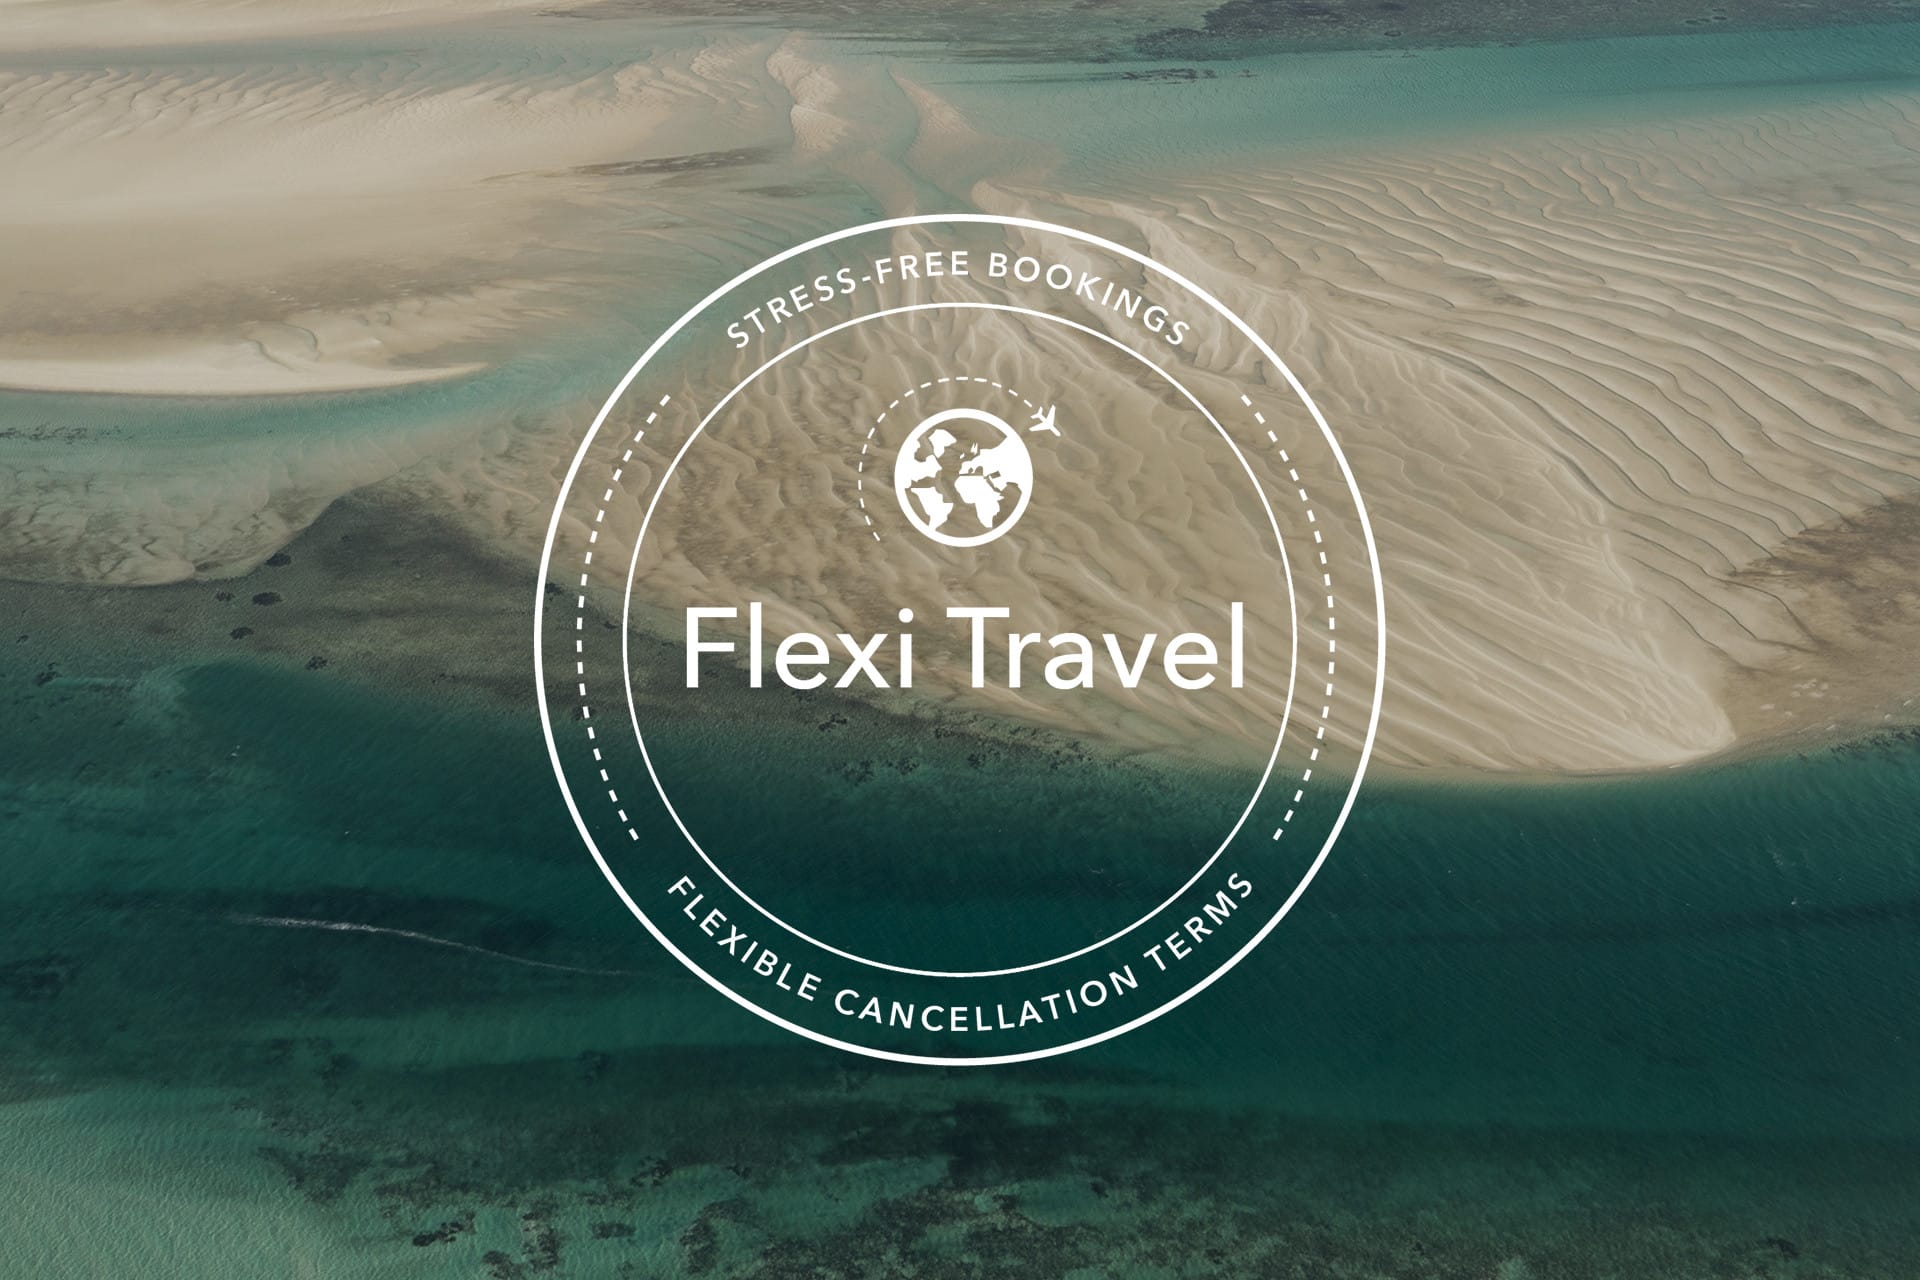 flexi booking trip.com